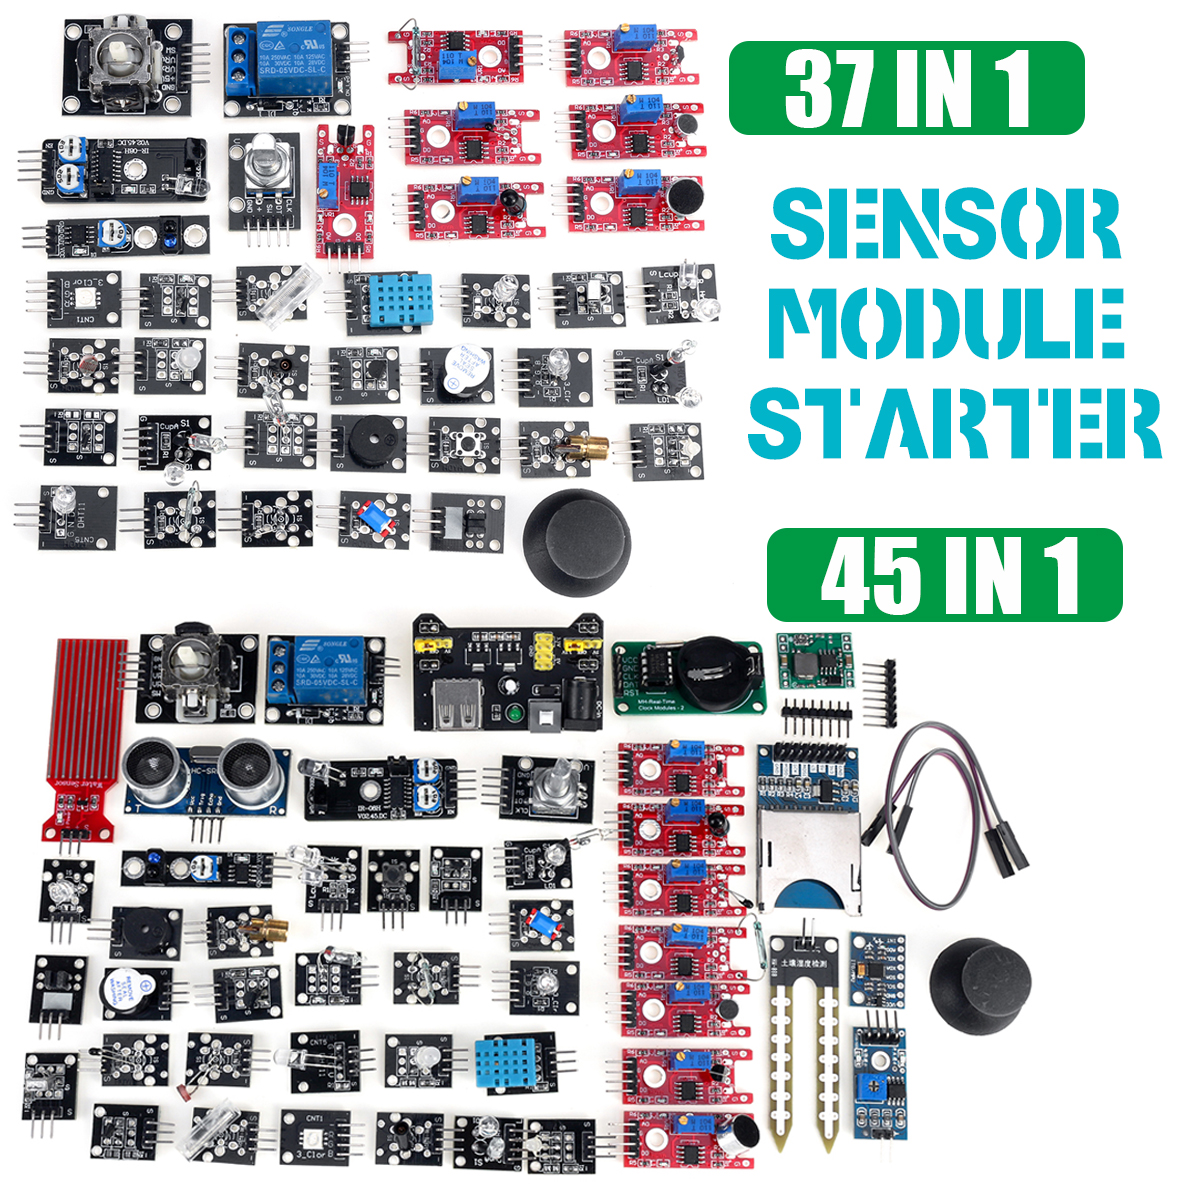 45-IN-137-IN-1-Sensor-Module-Starter-Kits-Set-For-Arduino-Raspberry-Pi-Education-Bag-Package-1619901-1